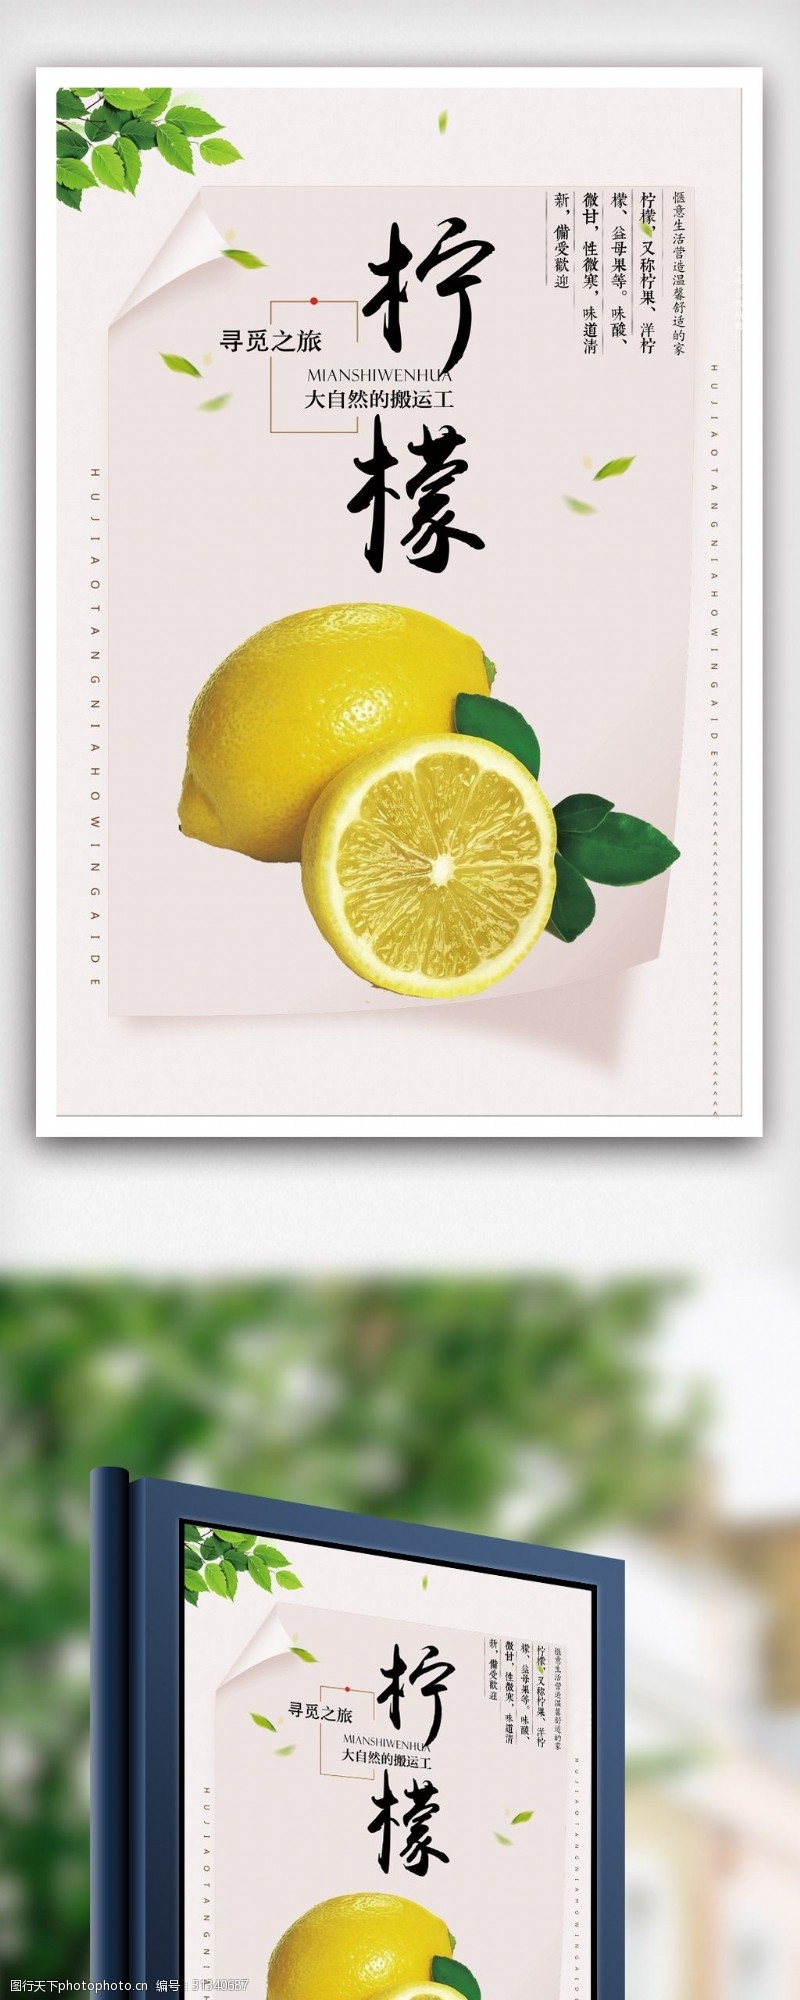 鲜桔柠檬新鲜水果柠檬海报模版psd